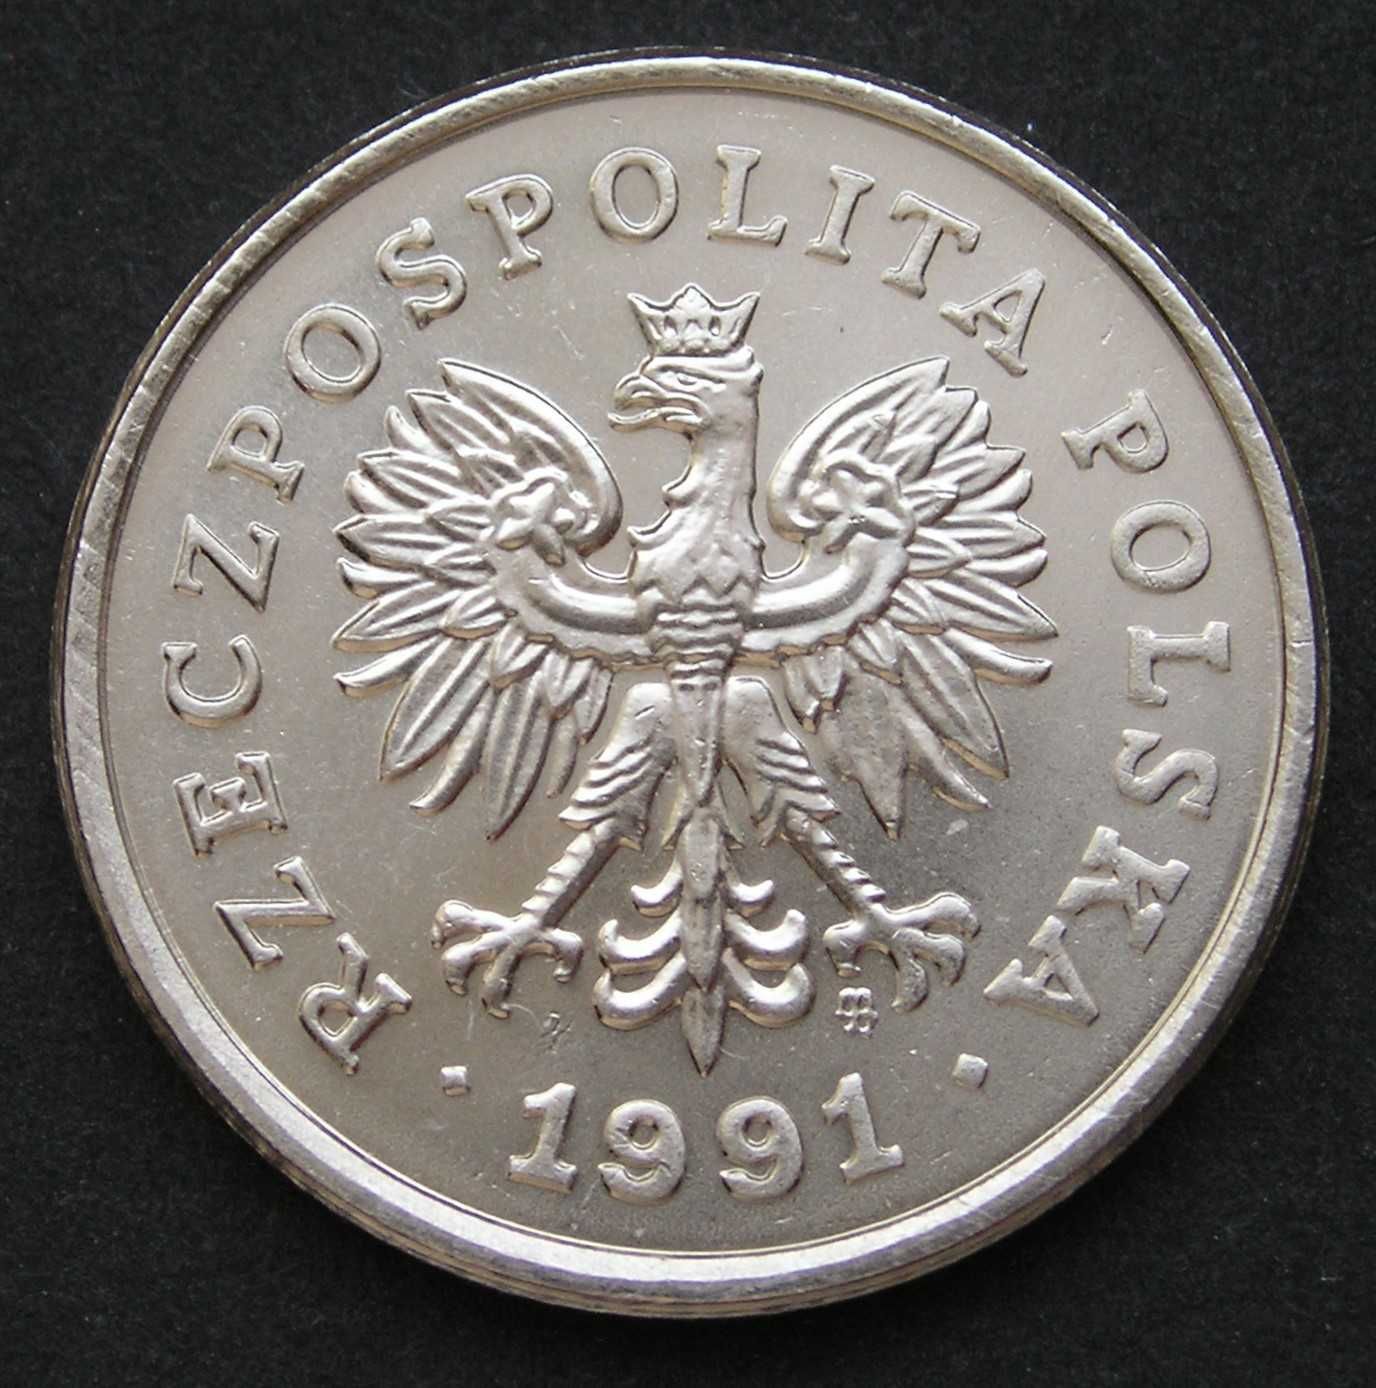 Polska 50 groszy 1991 - stan okołomenniczy